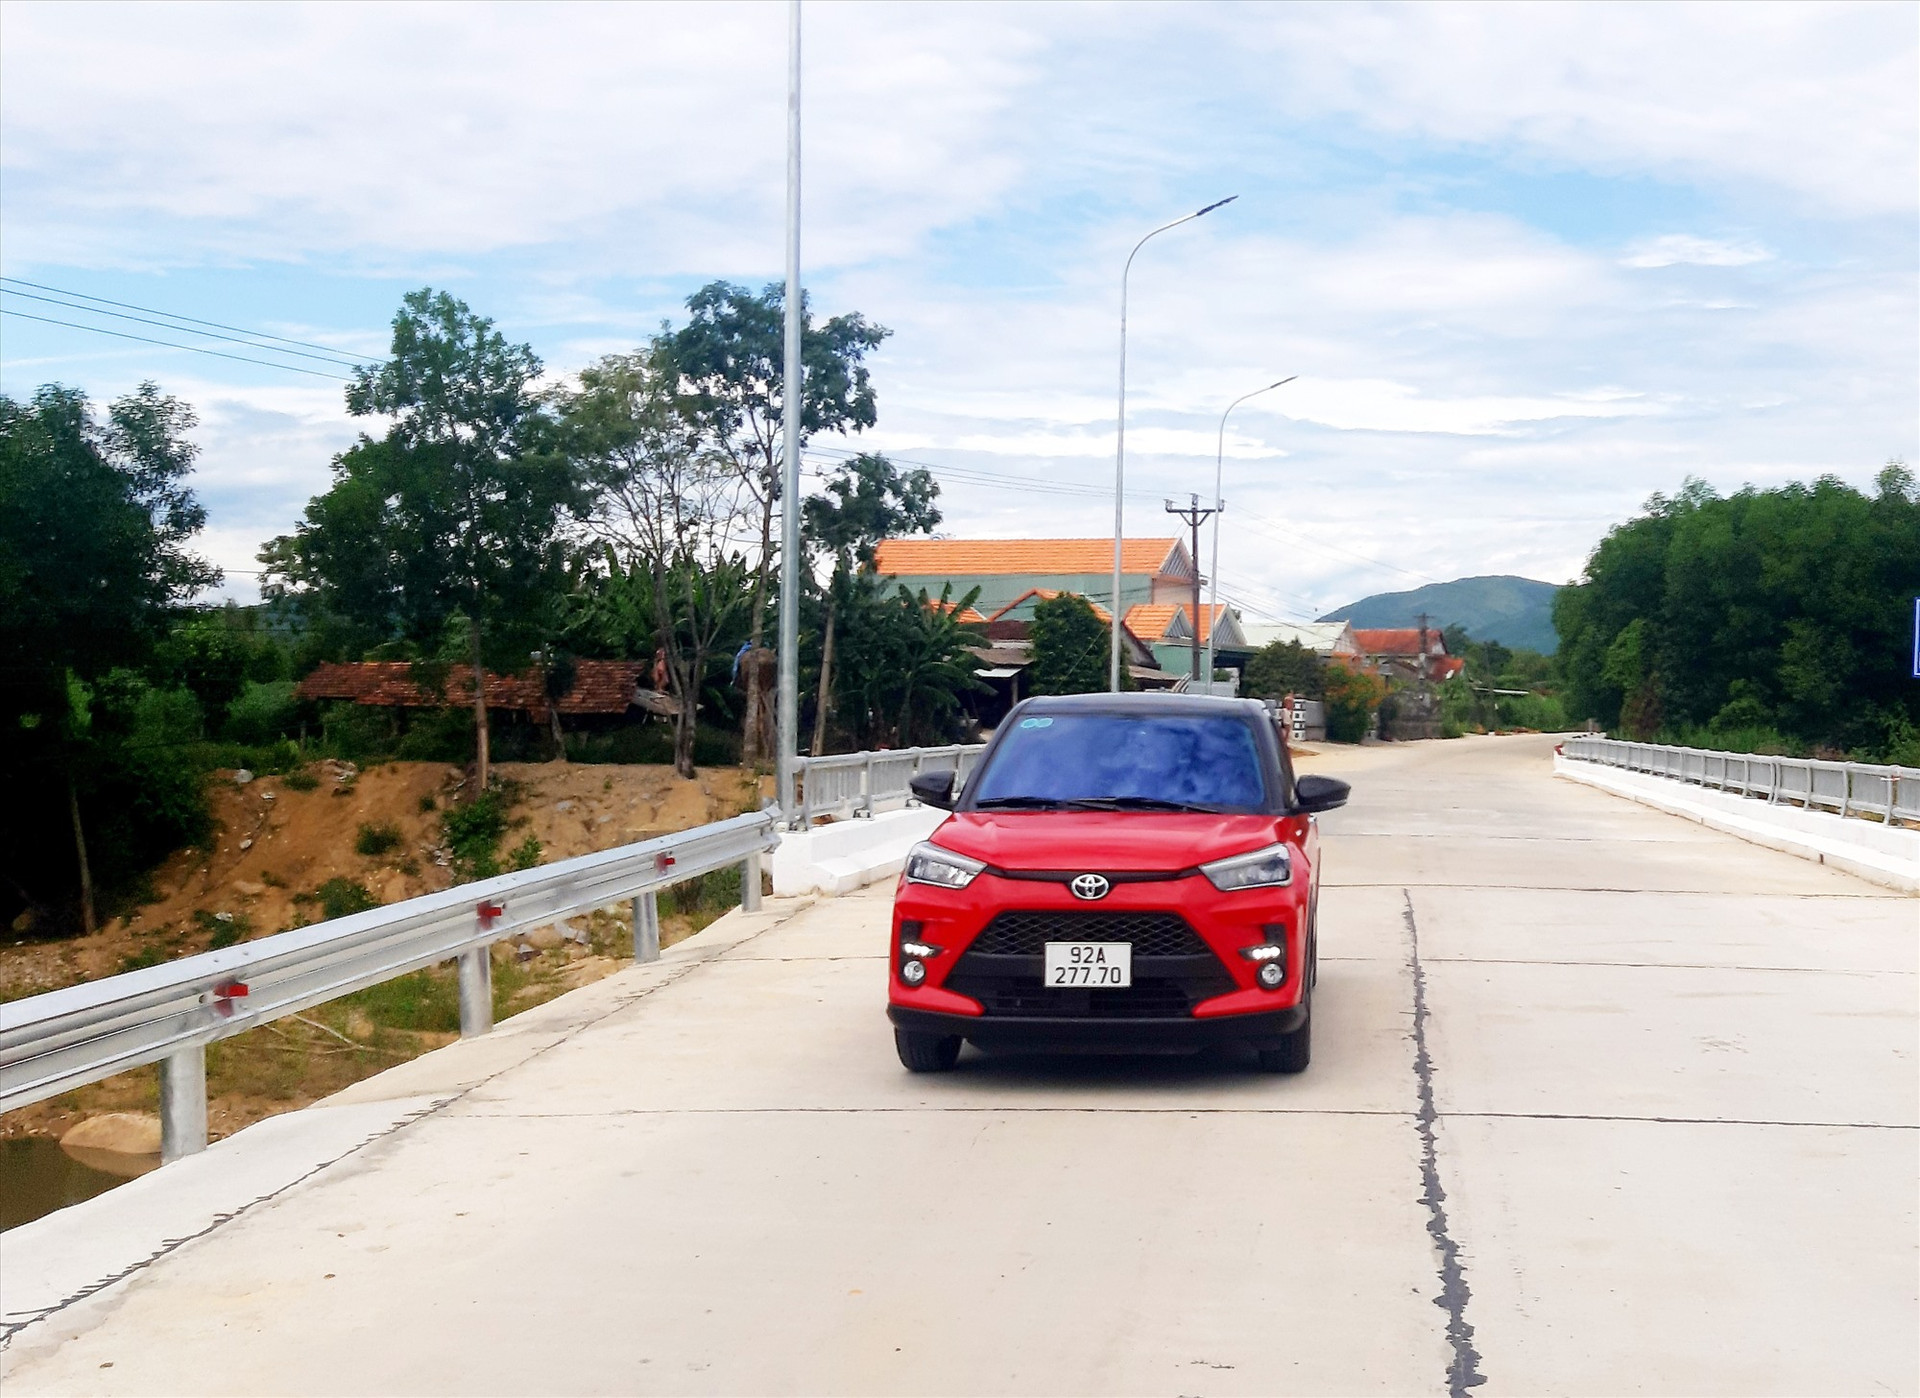 Cầu Sông Lĩnh nằm trên trục đường ĐH9 từ thị trấn Đông Phú lên xã Quế Phong vừa được đầu tư xây dựng hoàn thành với tổng kinh phí hơn 12,8 tỷ đồng. Ảnh: VĂN SỰ